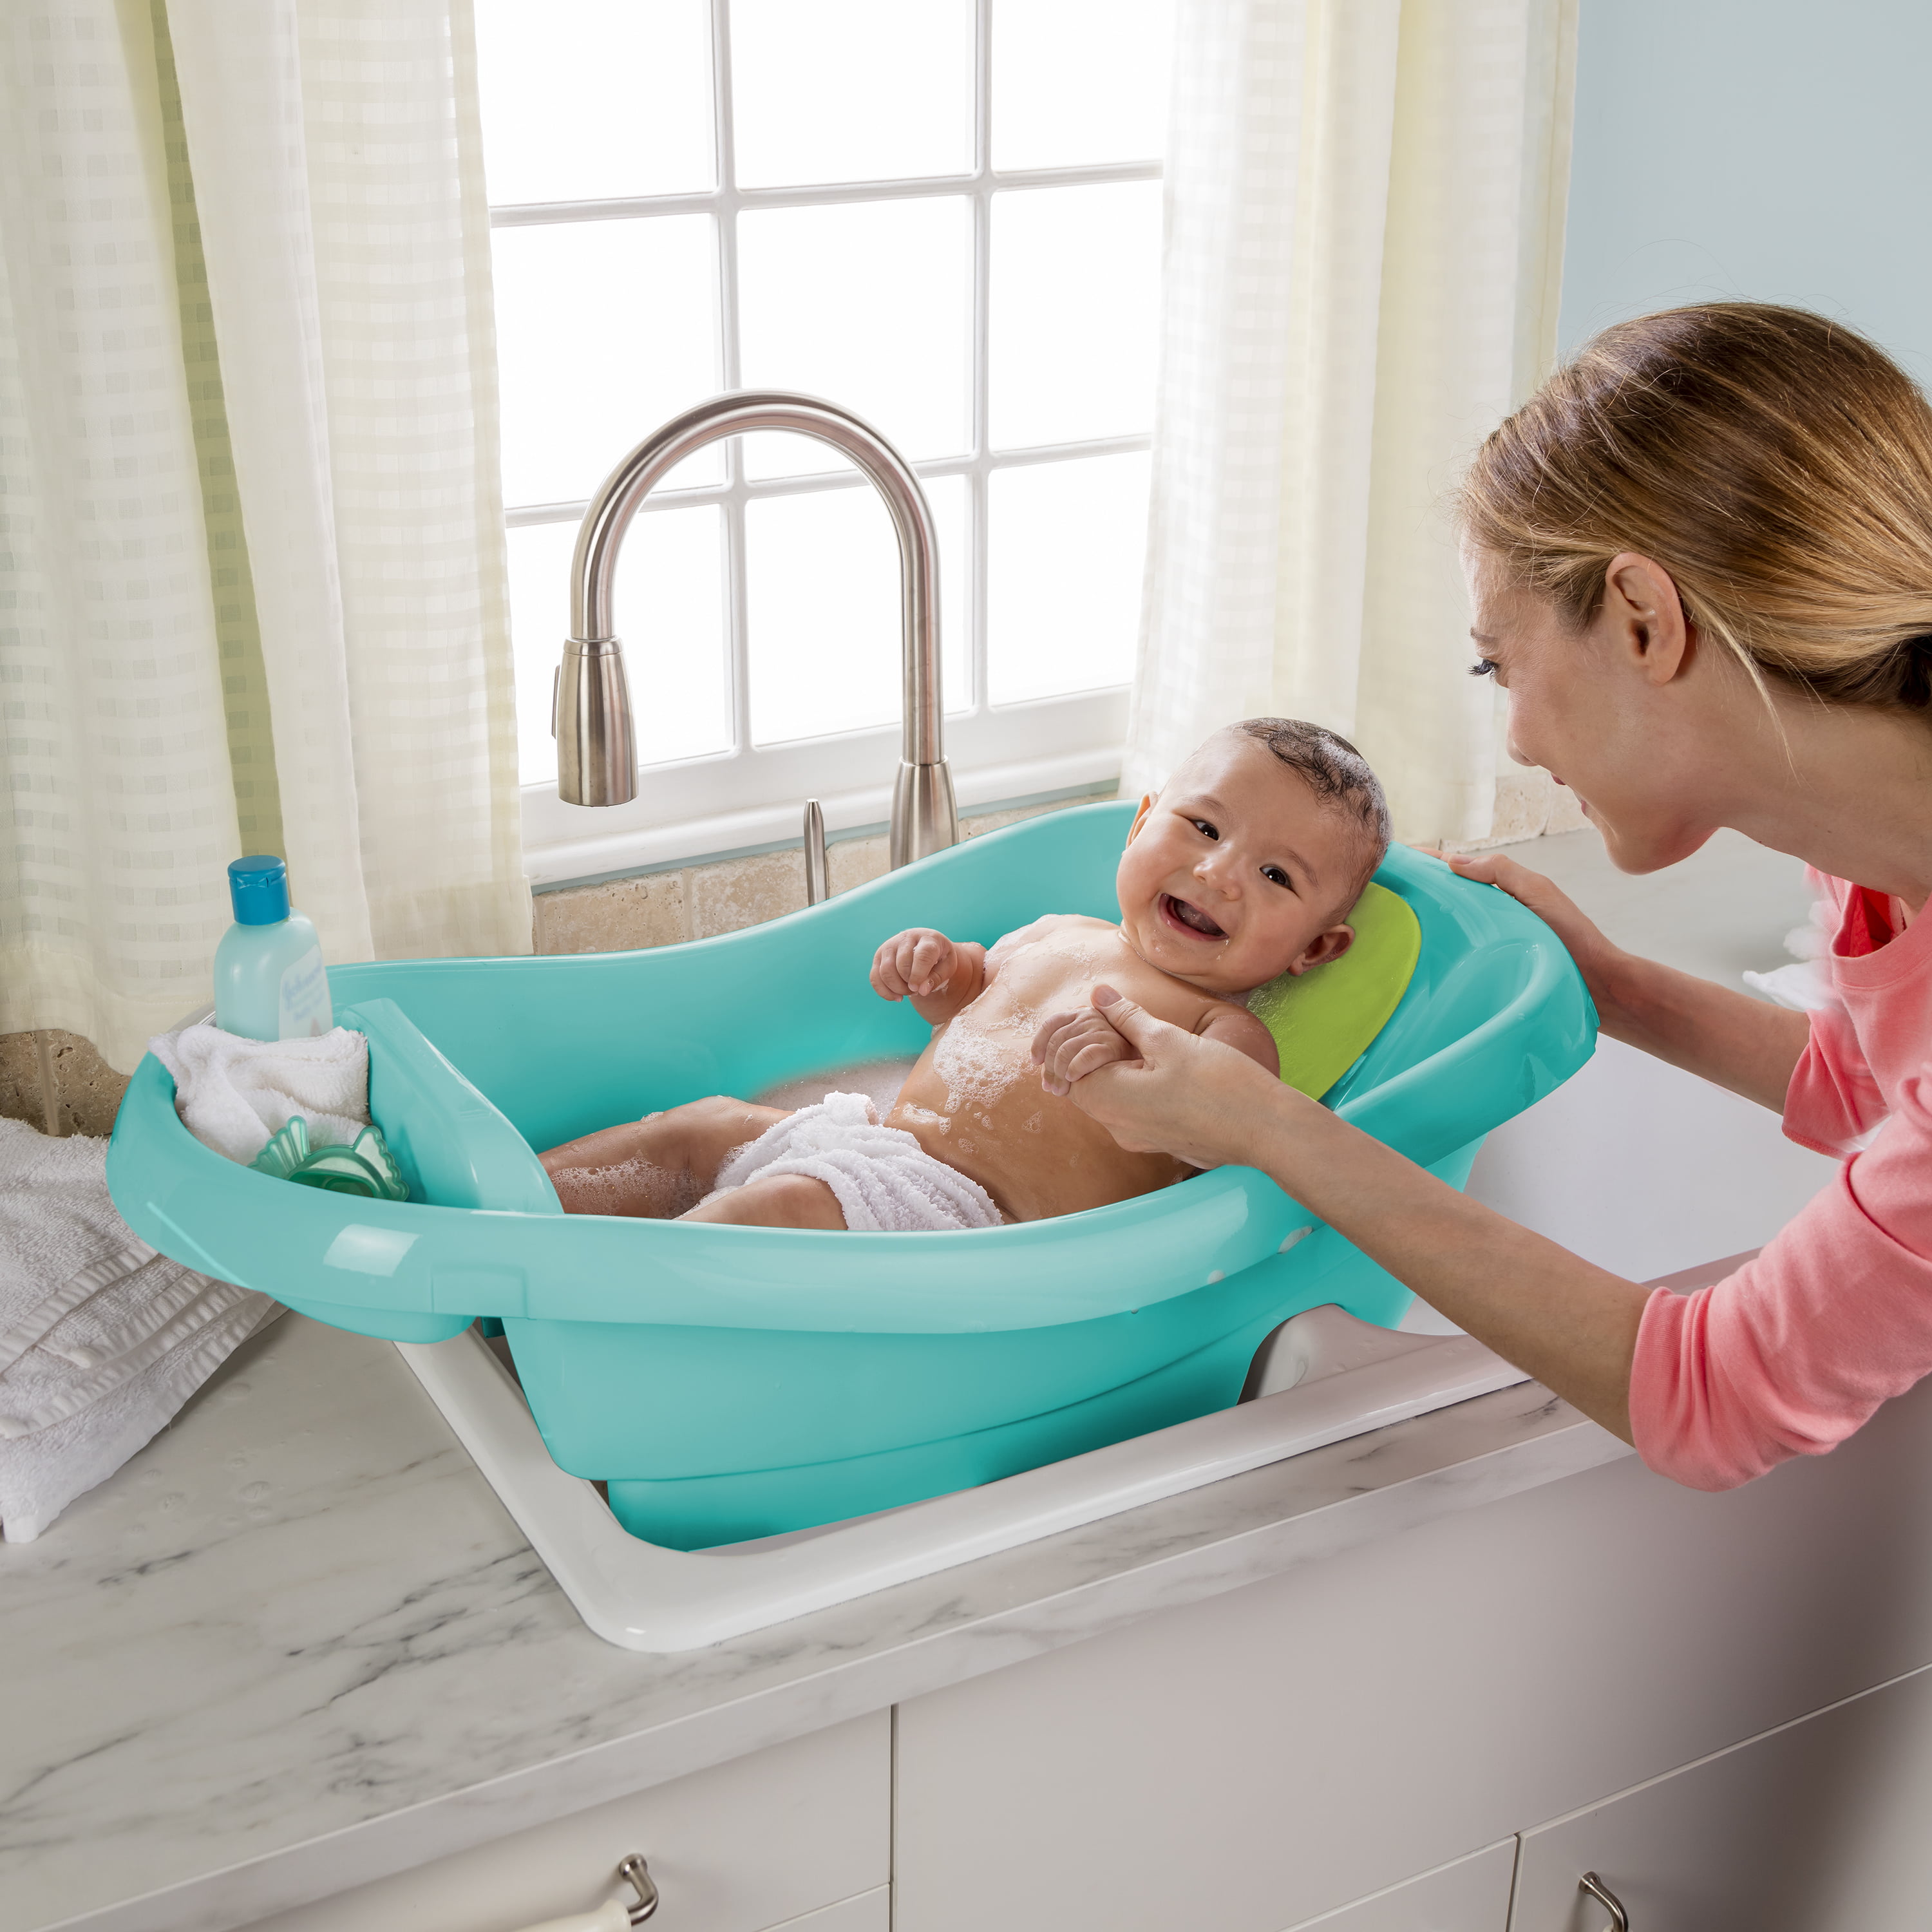 baby bath in tub